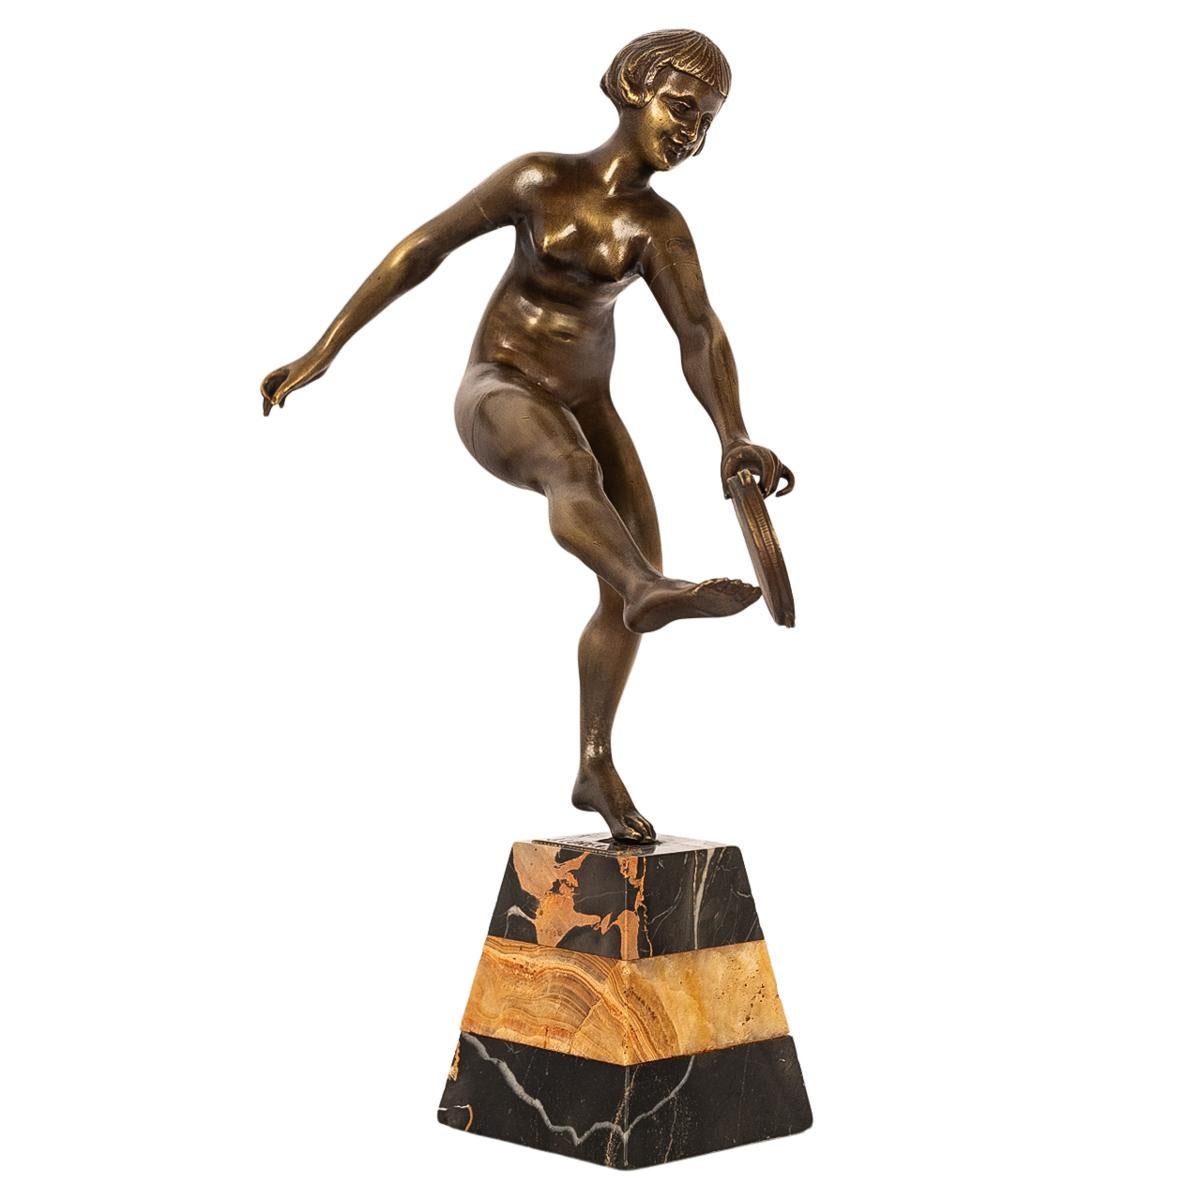 Eine sehr elegante antike Art Deco Bronzeskulptur, Statue von Josef Lorenzl, Österreich, 1925.
Diese schöne Bronzeskulptur stellt eine schöne junge Frau dar, die als nackte Tamburintänzerin modelliert ist. Sie hält mit der linken Hand ein Tamburin